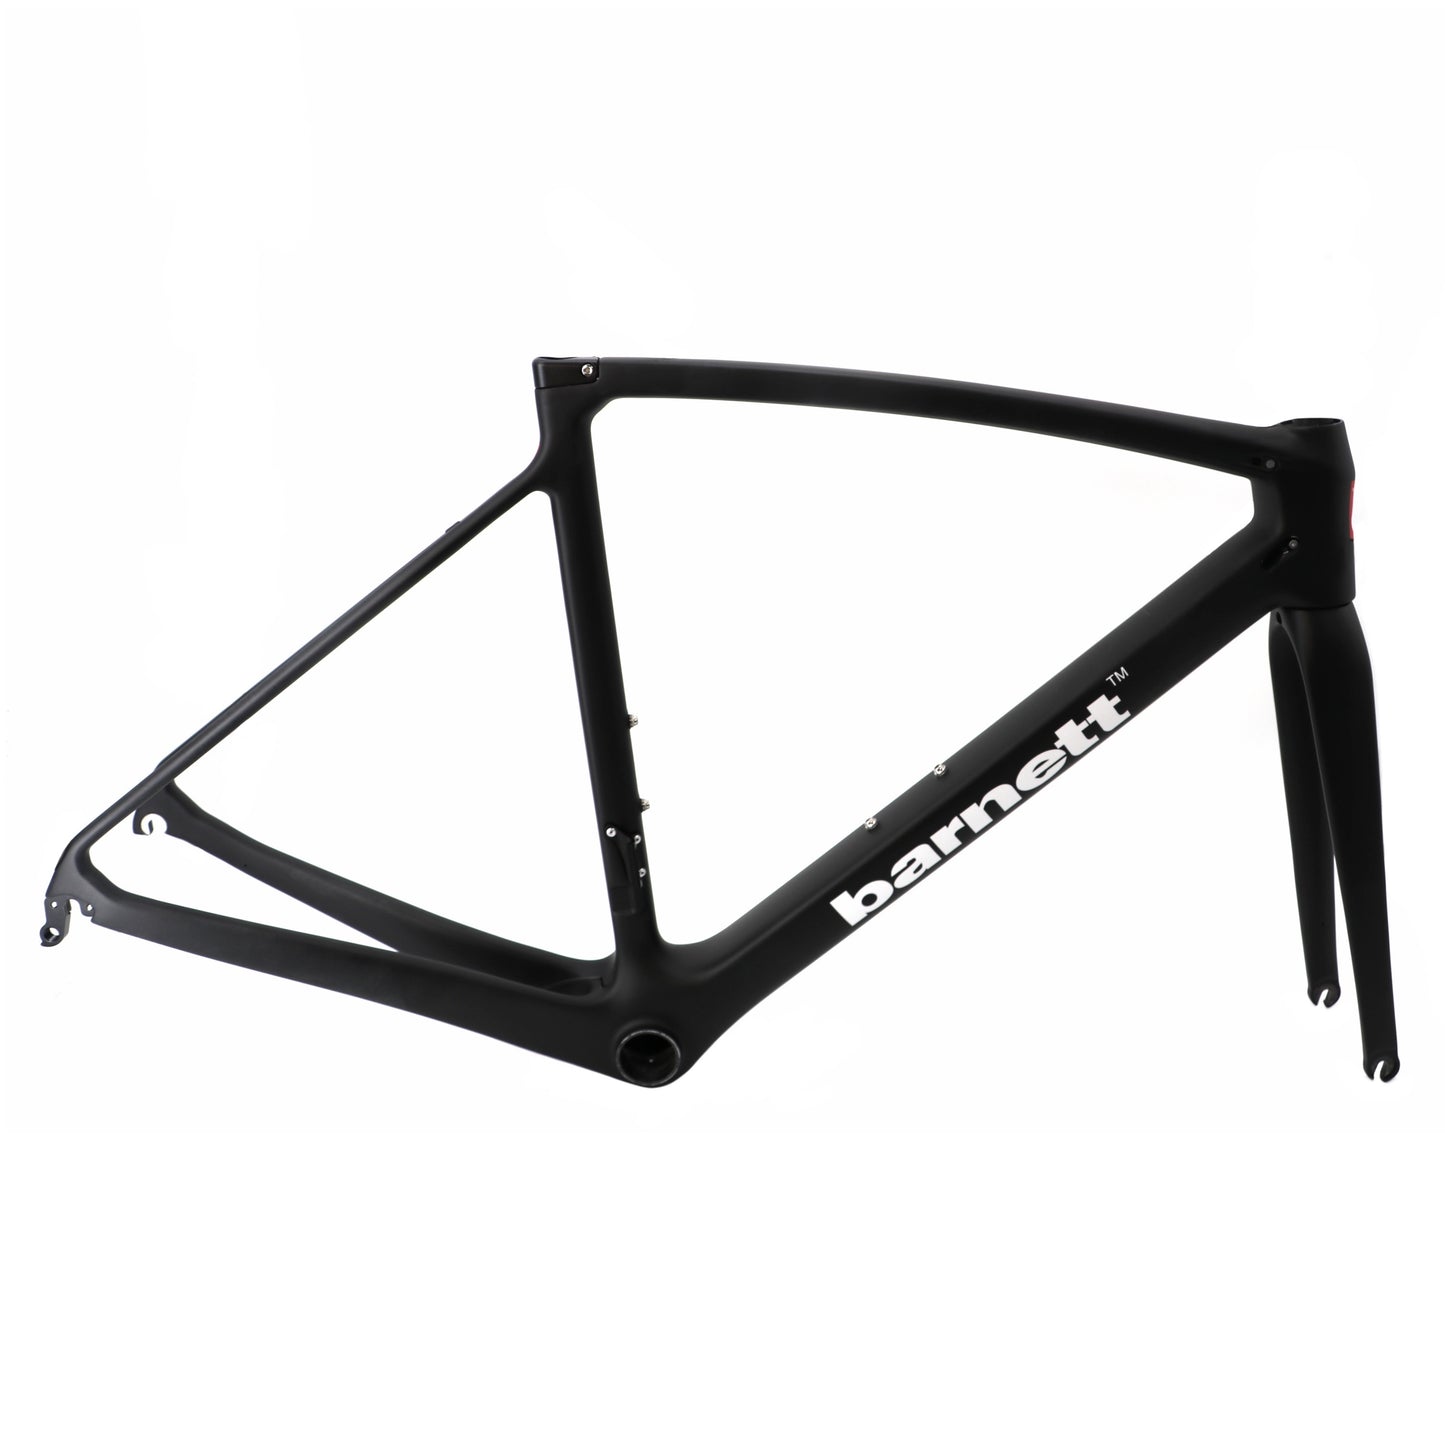 BRC-01 Telaio per bici in carbonio, bianco, nero